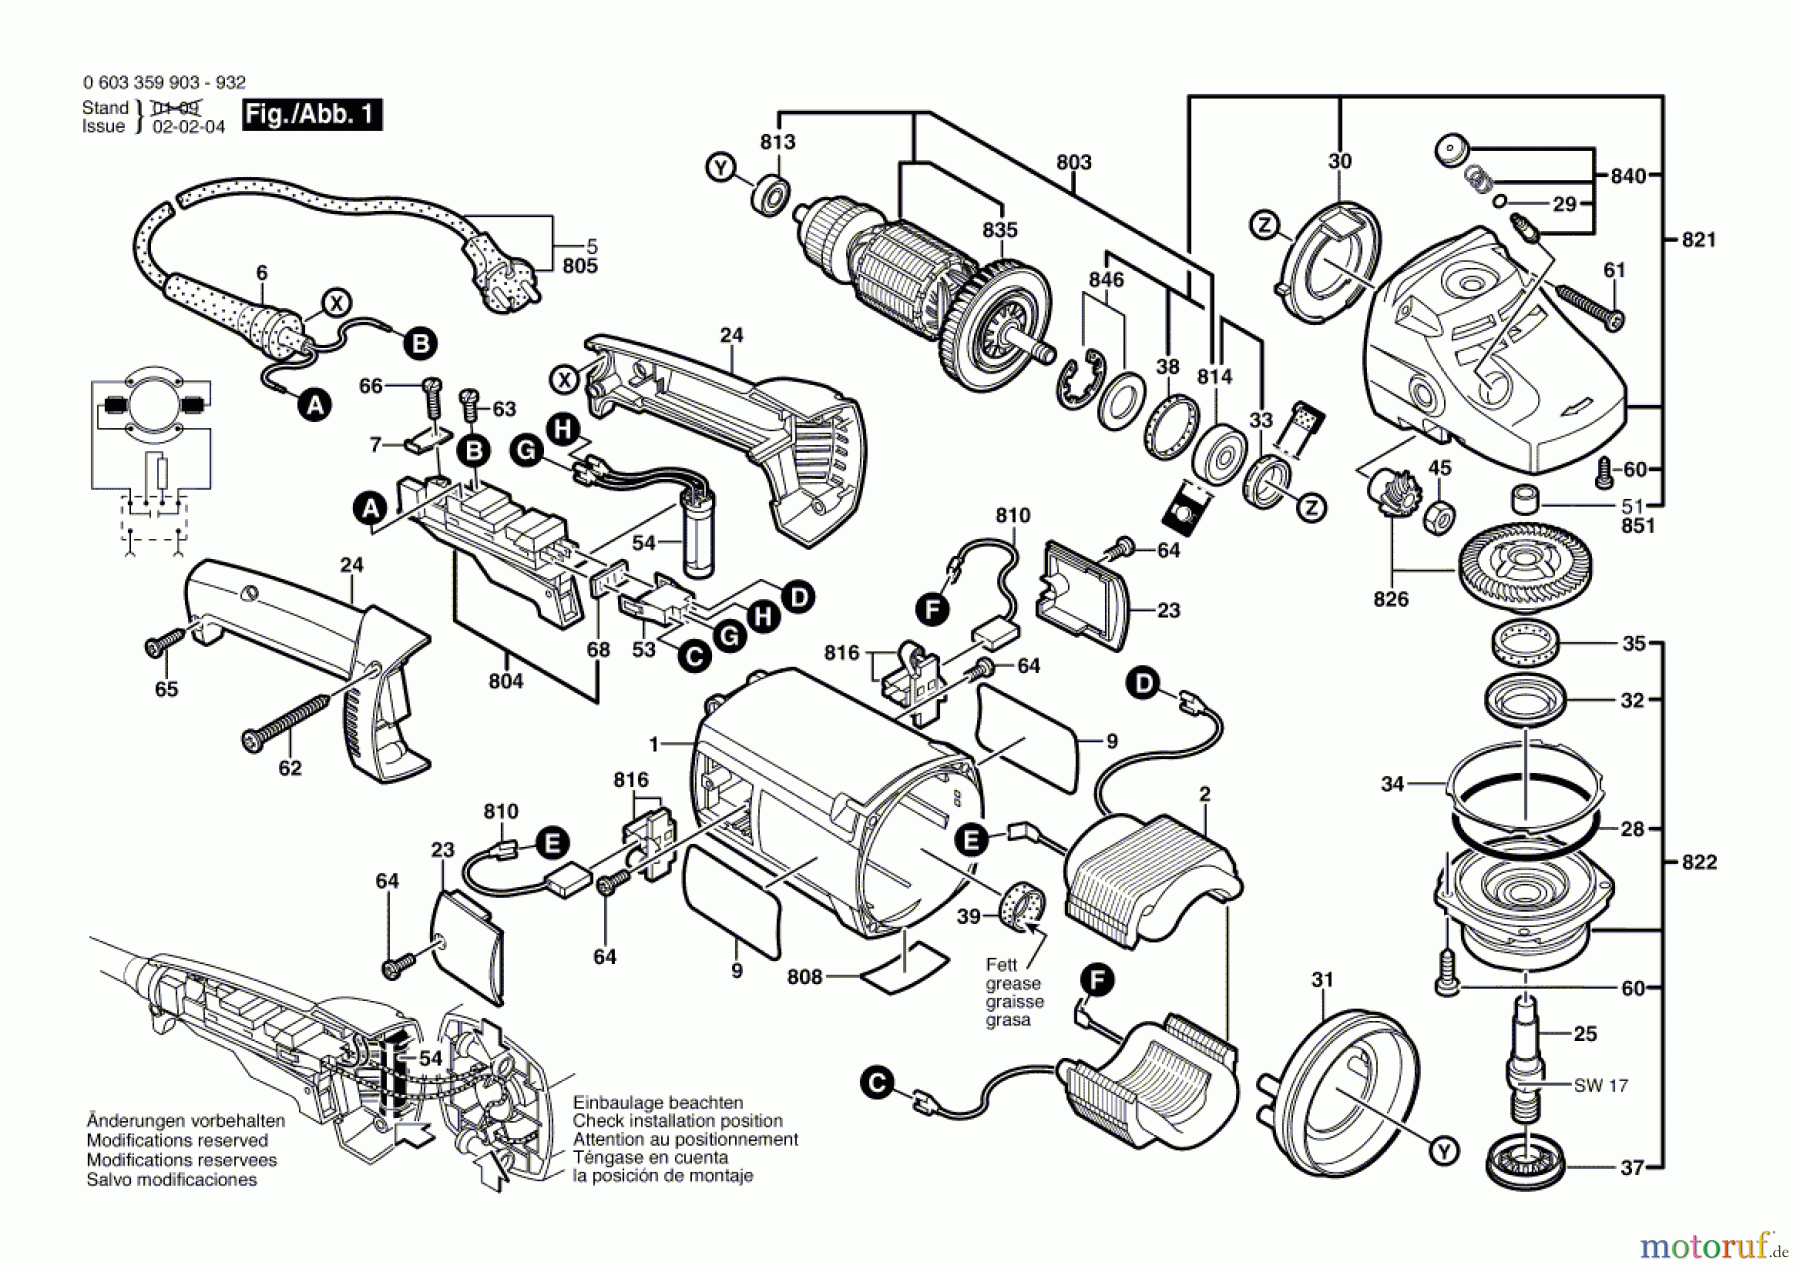  Bosch Werkzeug Winkelschleifer PWS 20-230 Seite 1